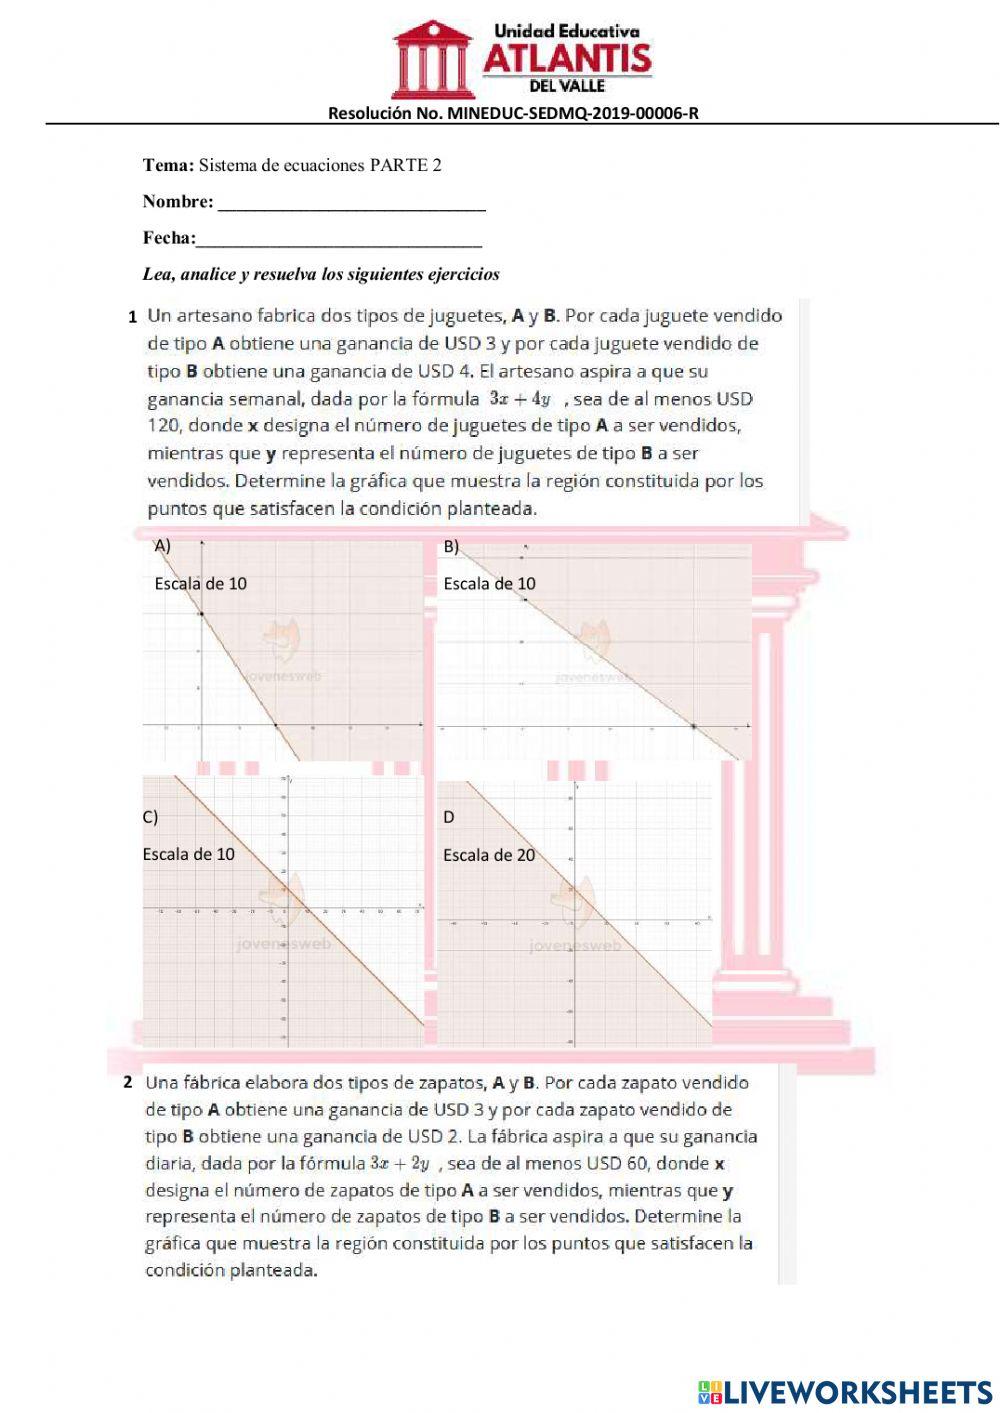 Sistema de ecuaciones lineales PARTE 2